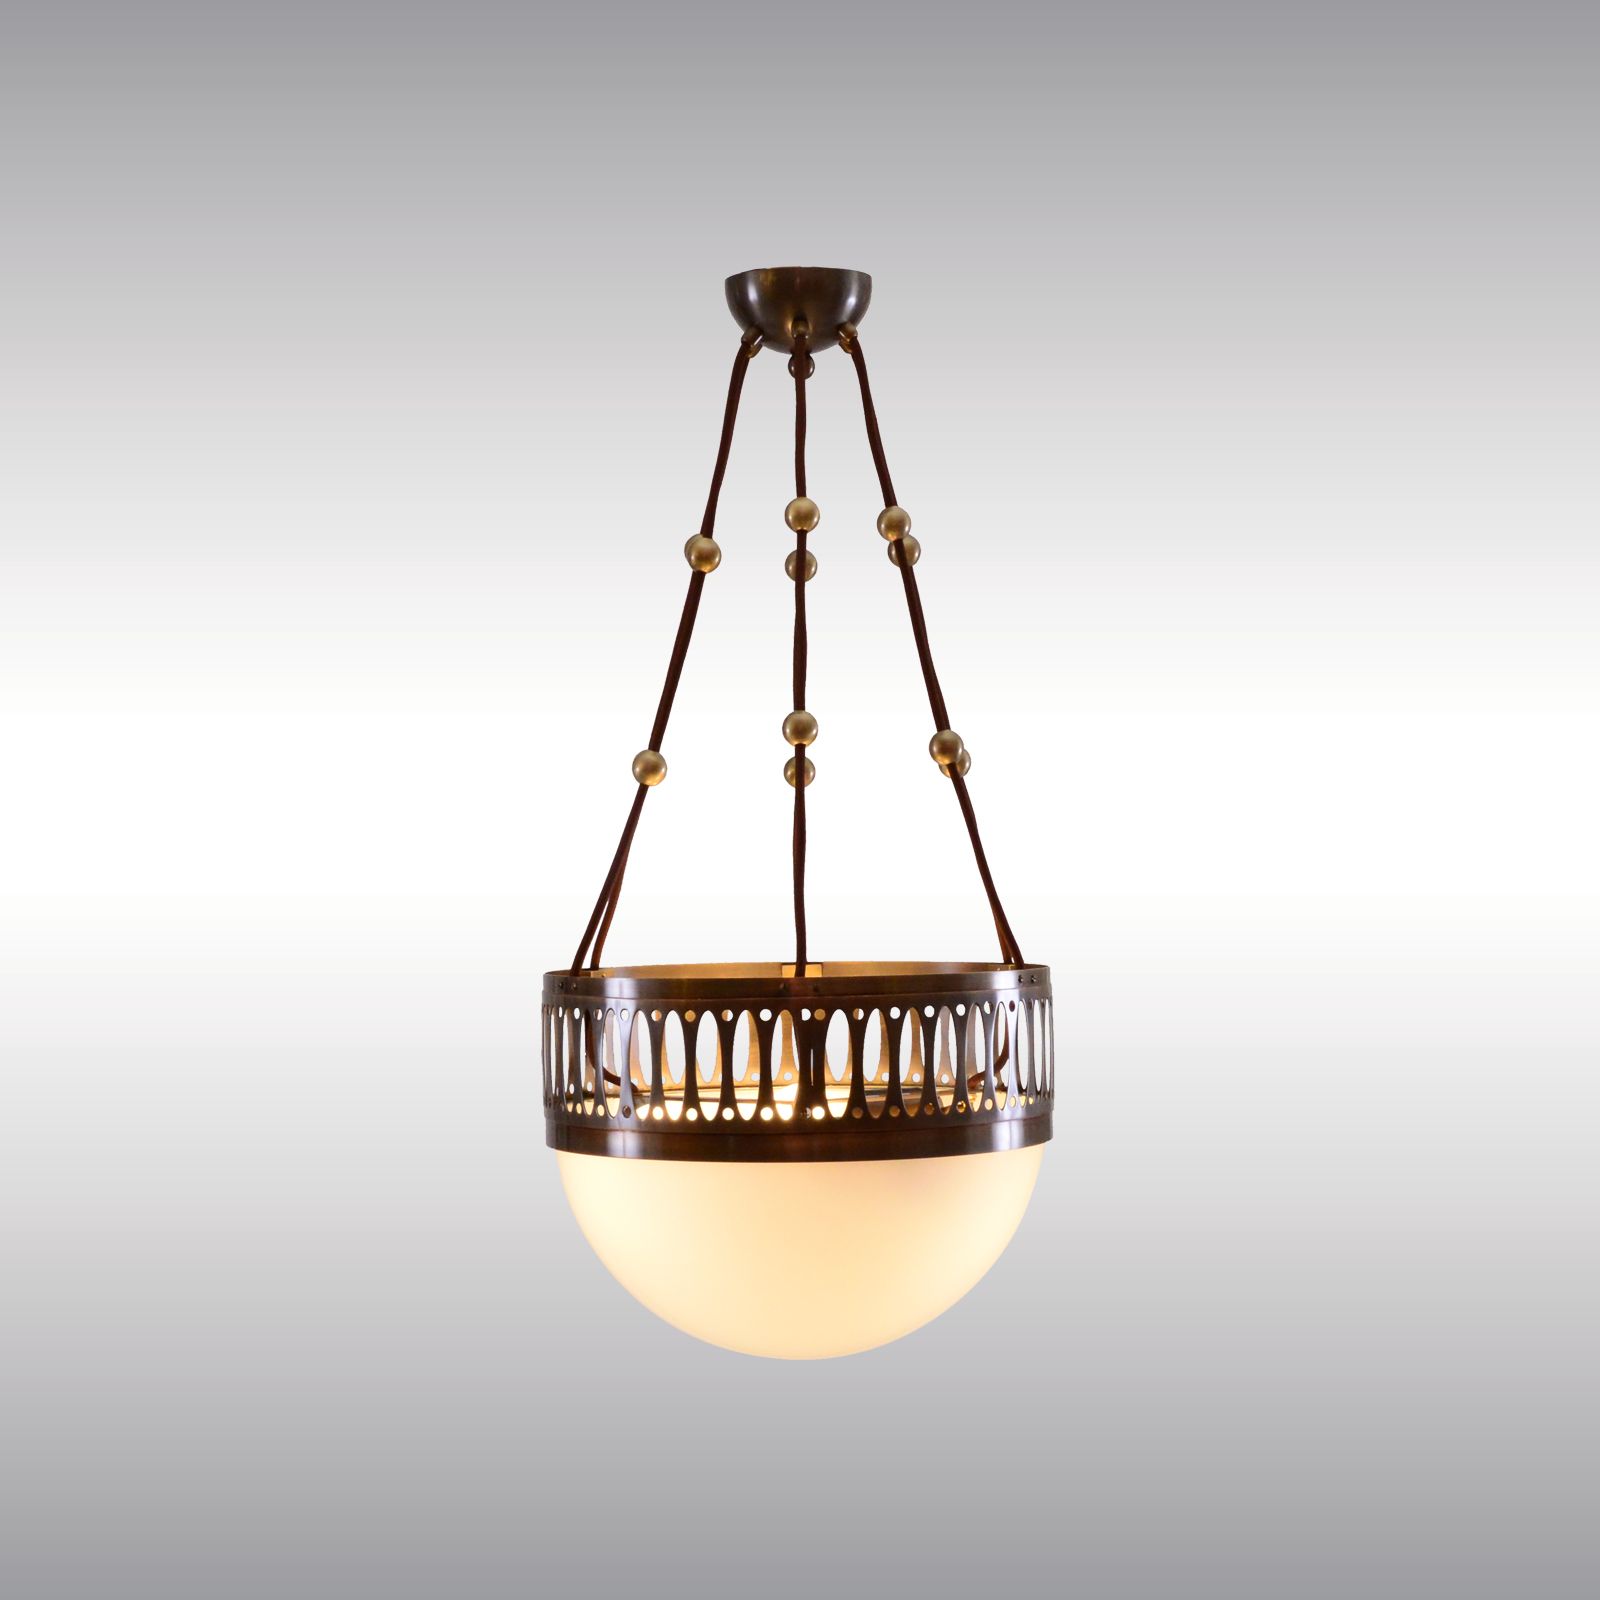 WOKA LAMPS VIENNA - OrderNr.: 21629|Wireball-35 - Design: Wiener Werkstaette attributed